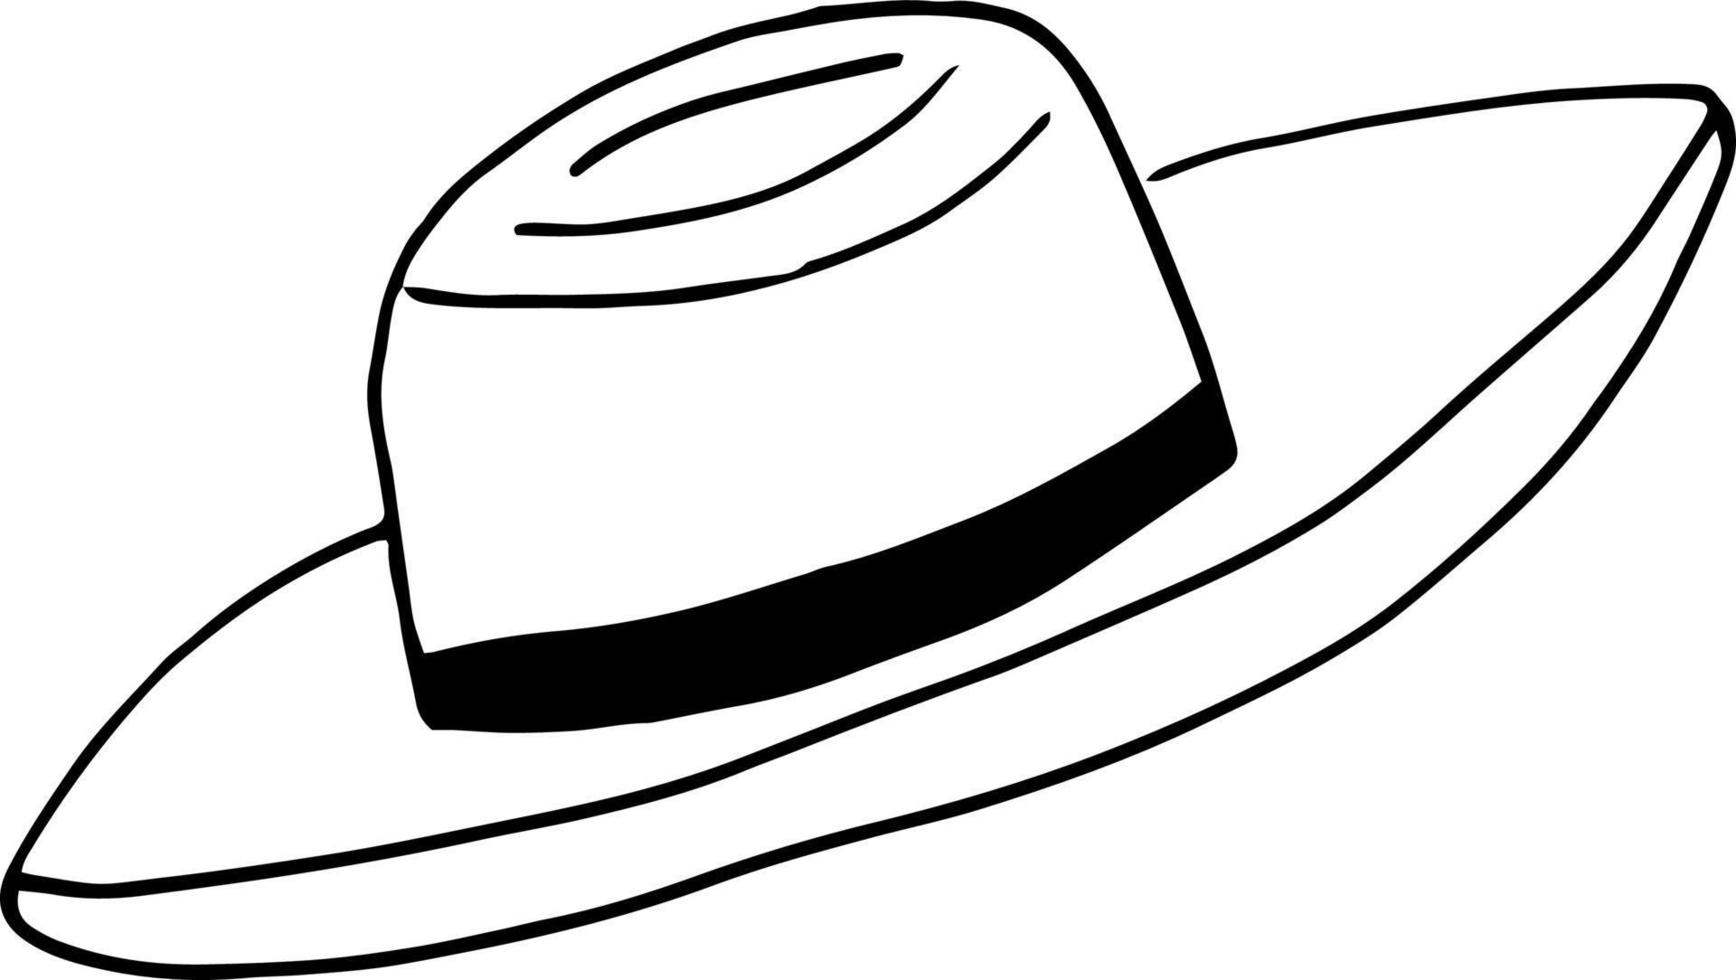 icono de sombrero. doodle dibujado a mano. , escandinavo, nórdico minimalismo monocromático tocado ropa vector